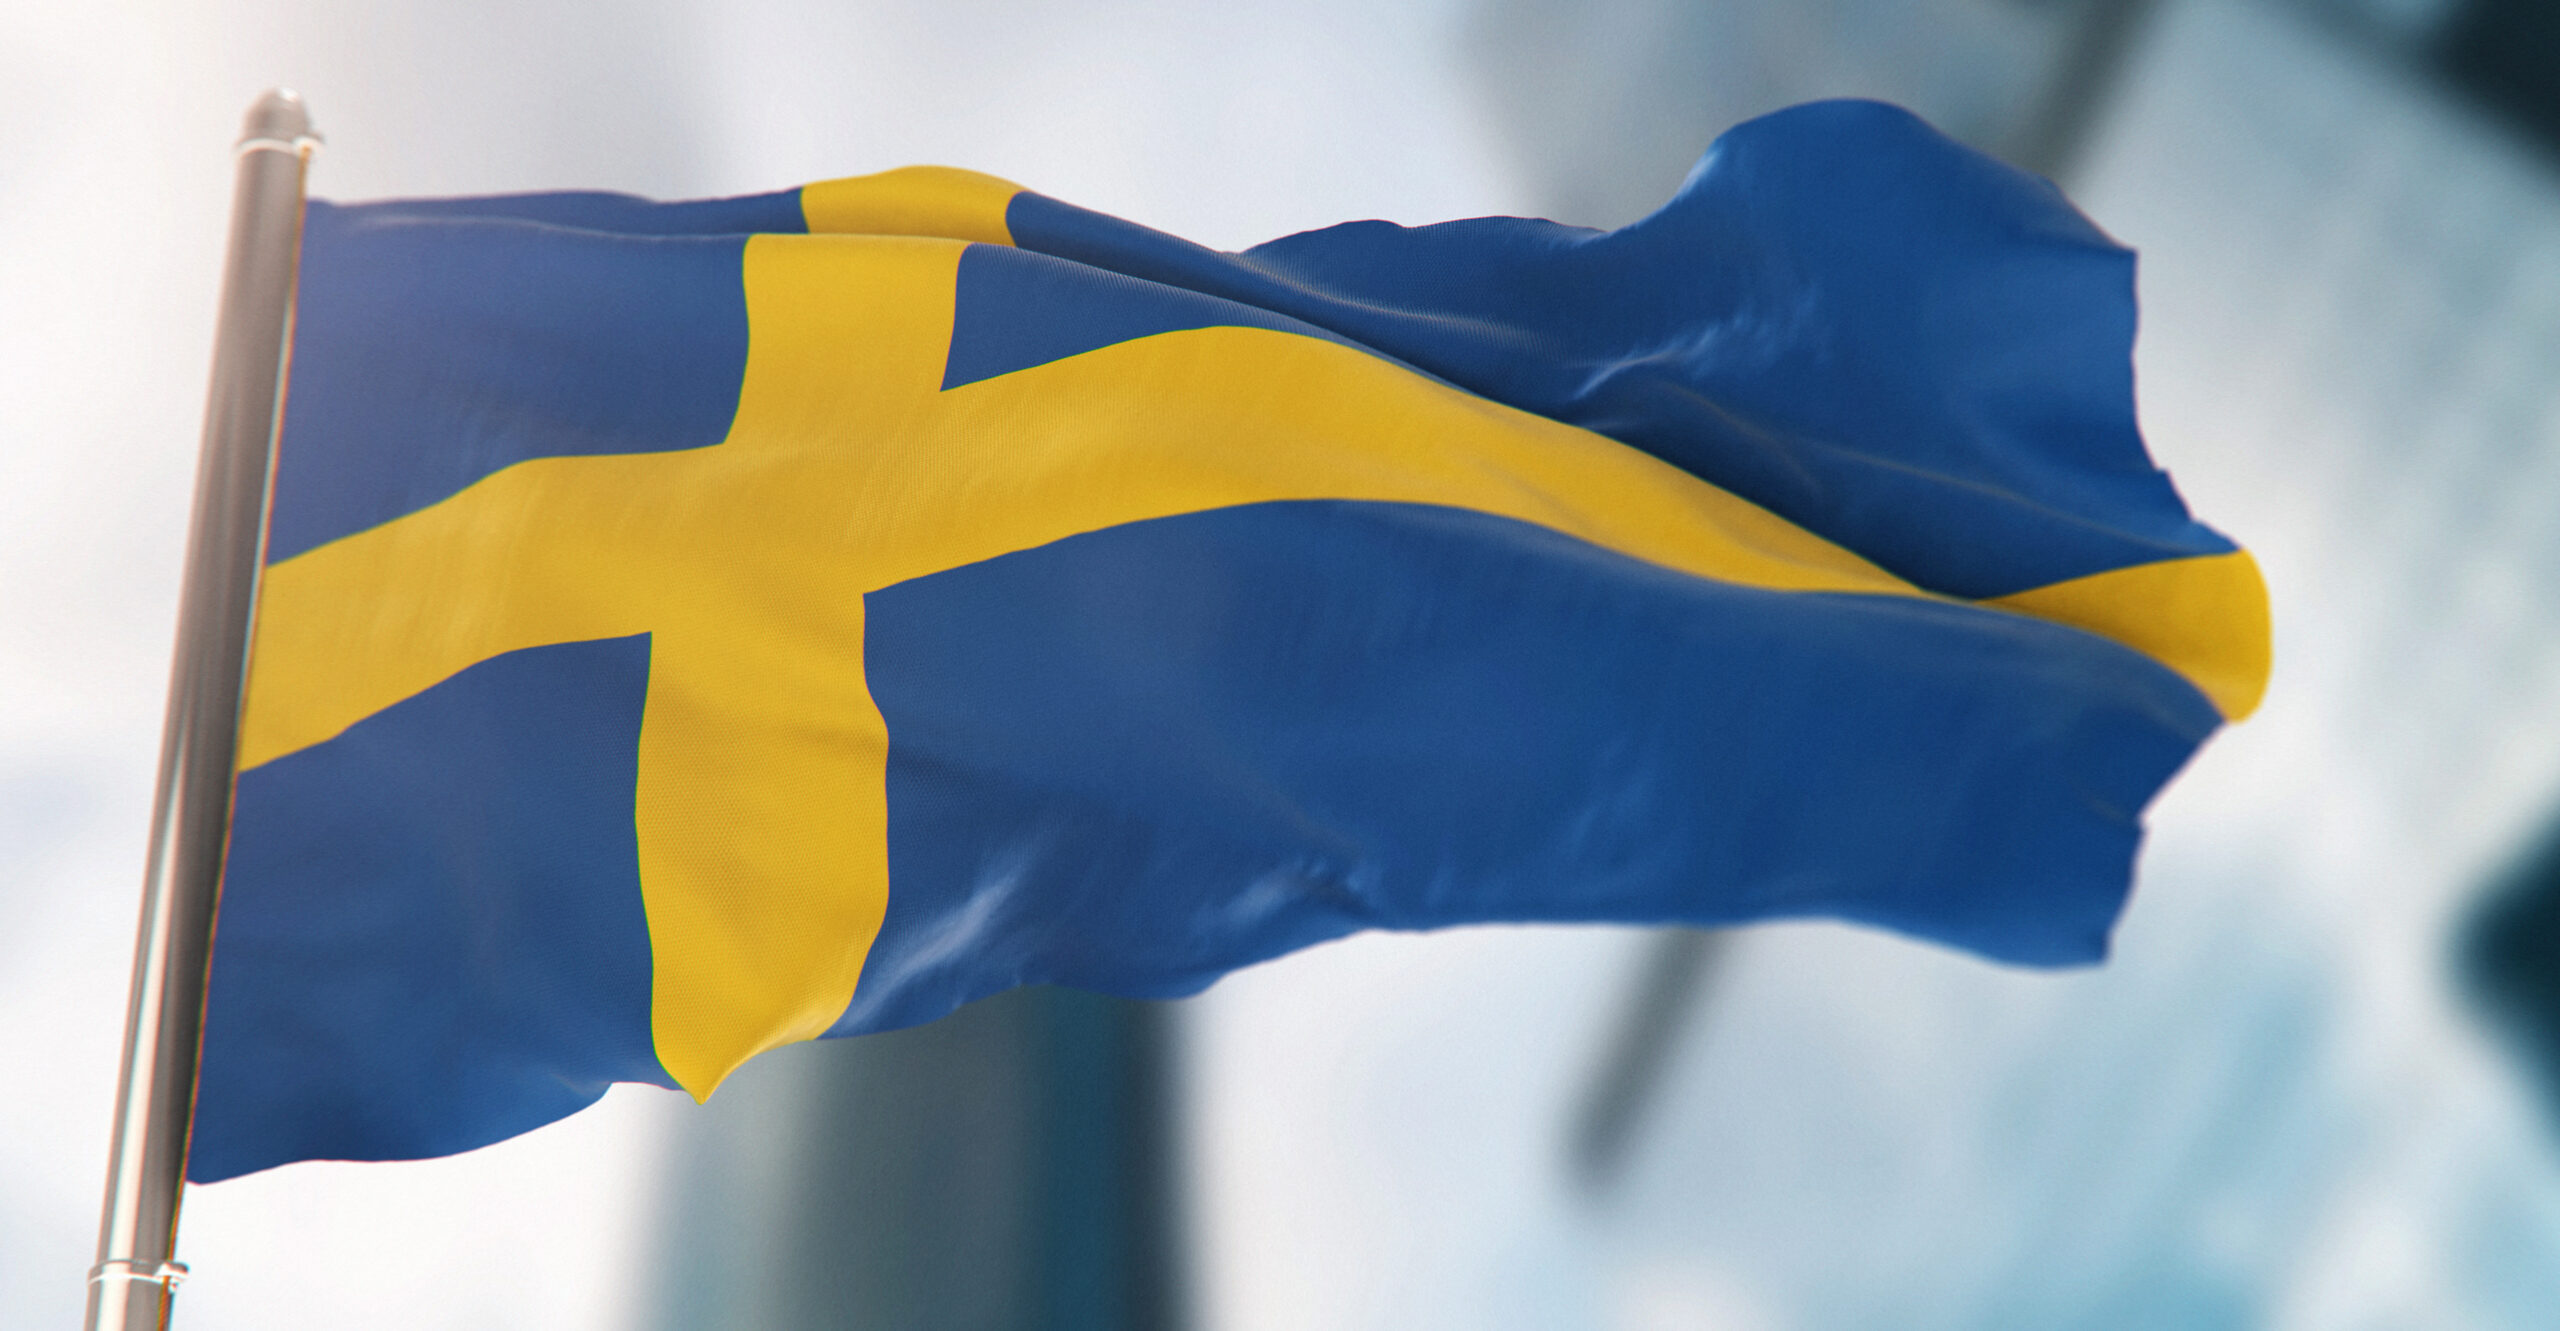 Swedish Hospital Won't Use Drugs on Gender Dysphoric Youths Under 16